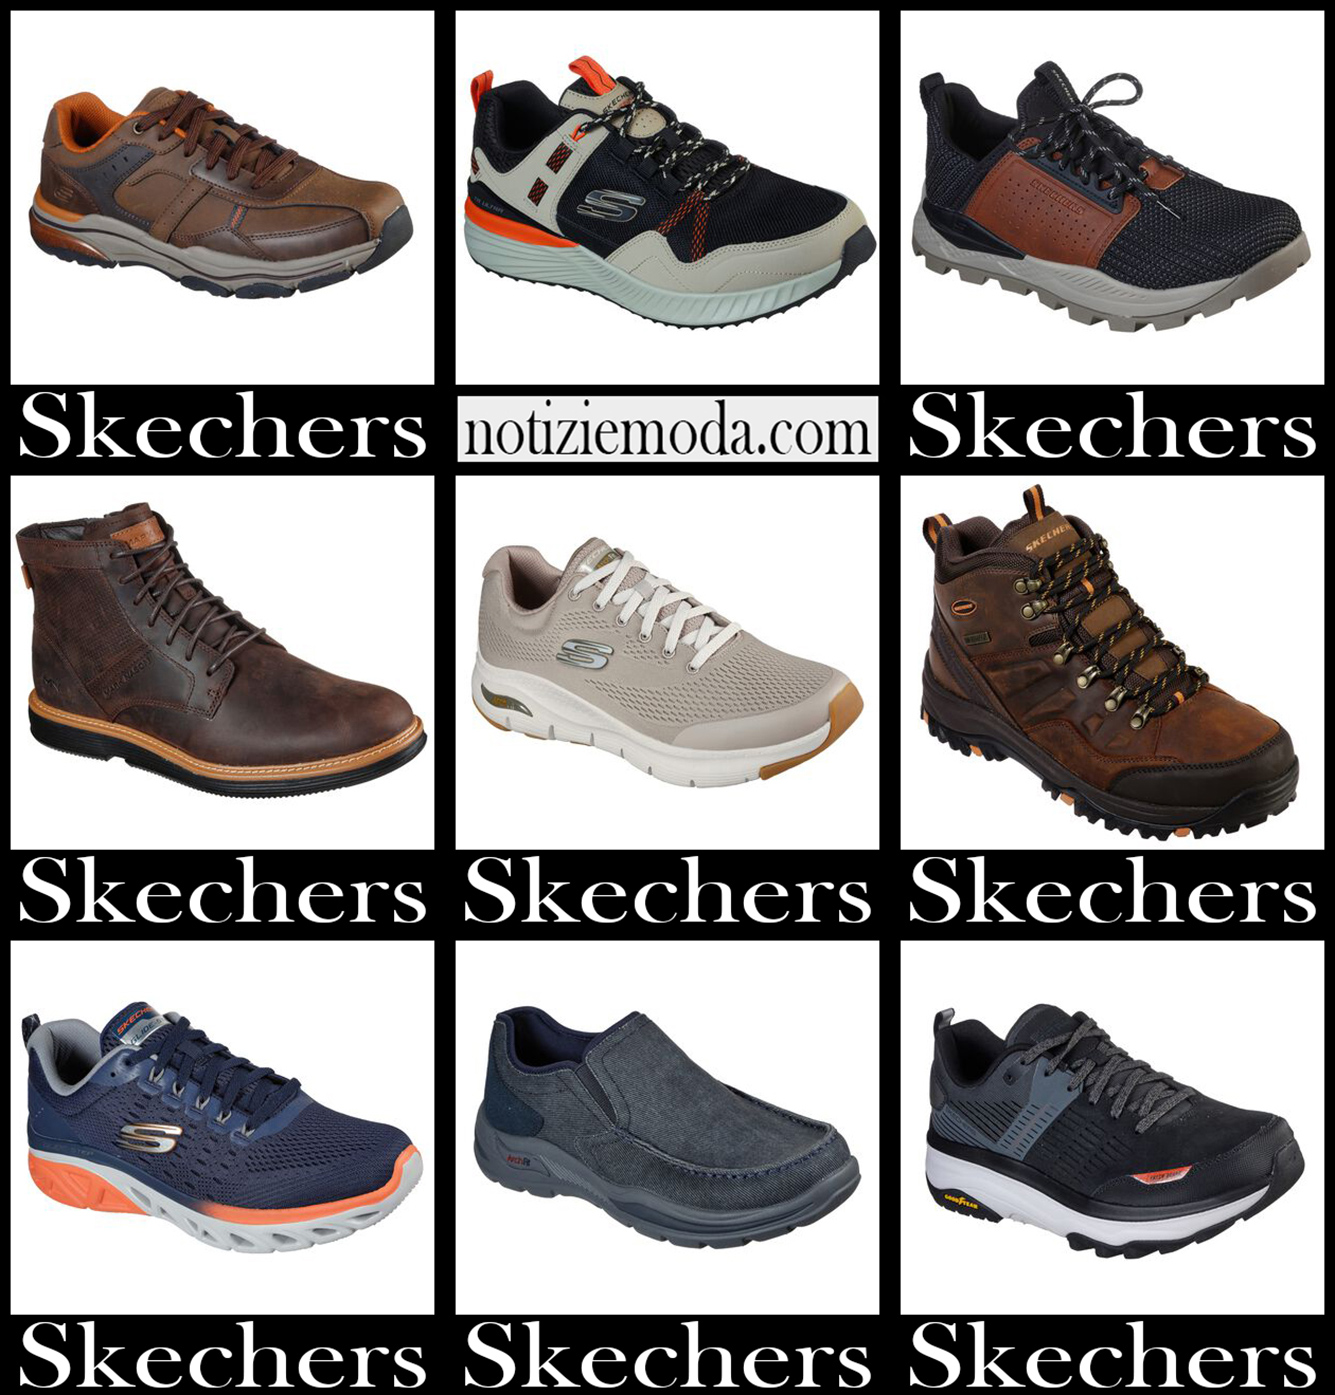 Scarpe Skechers 20-2021 autunno inverno moda uomo